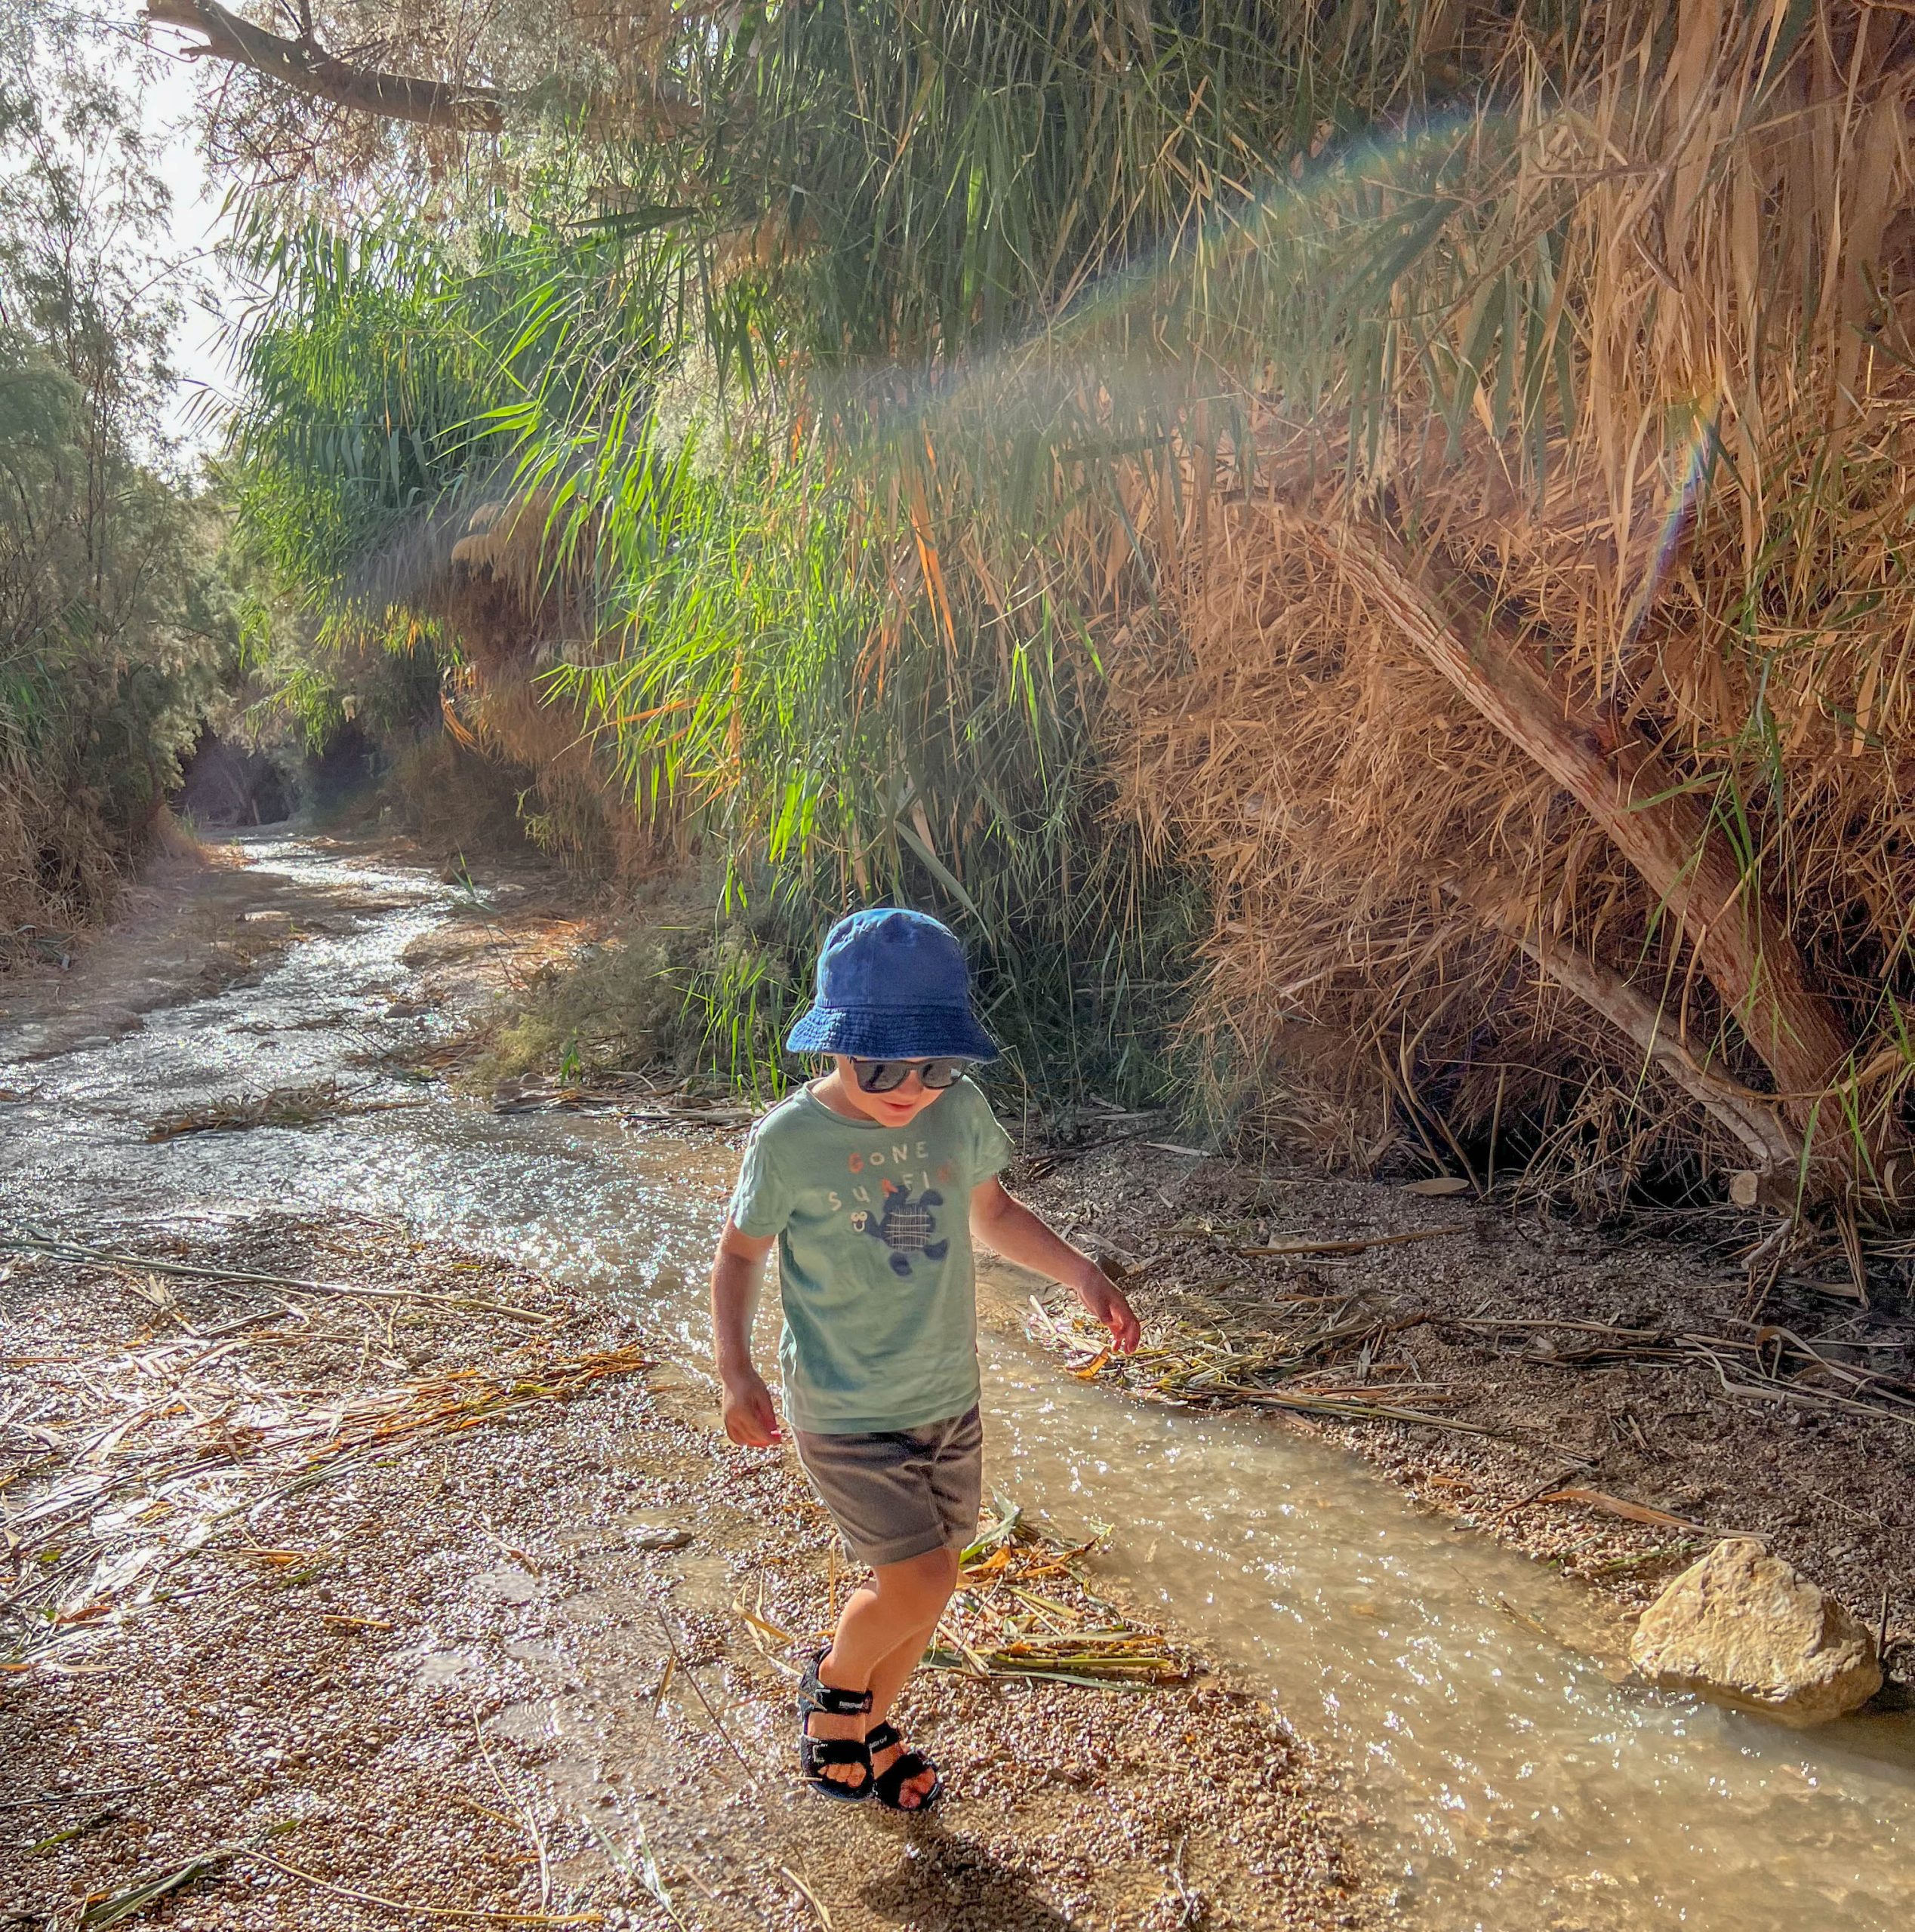 עין בוקק- מסלול הליכה במים לילדים שמתאים גם לימים החמים